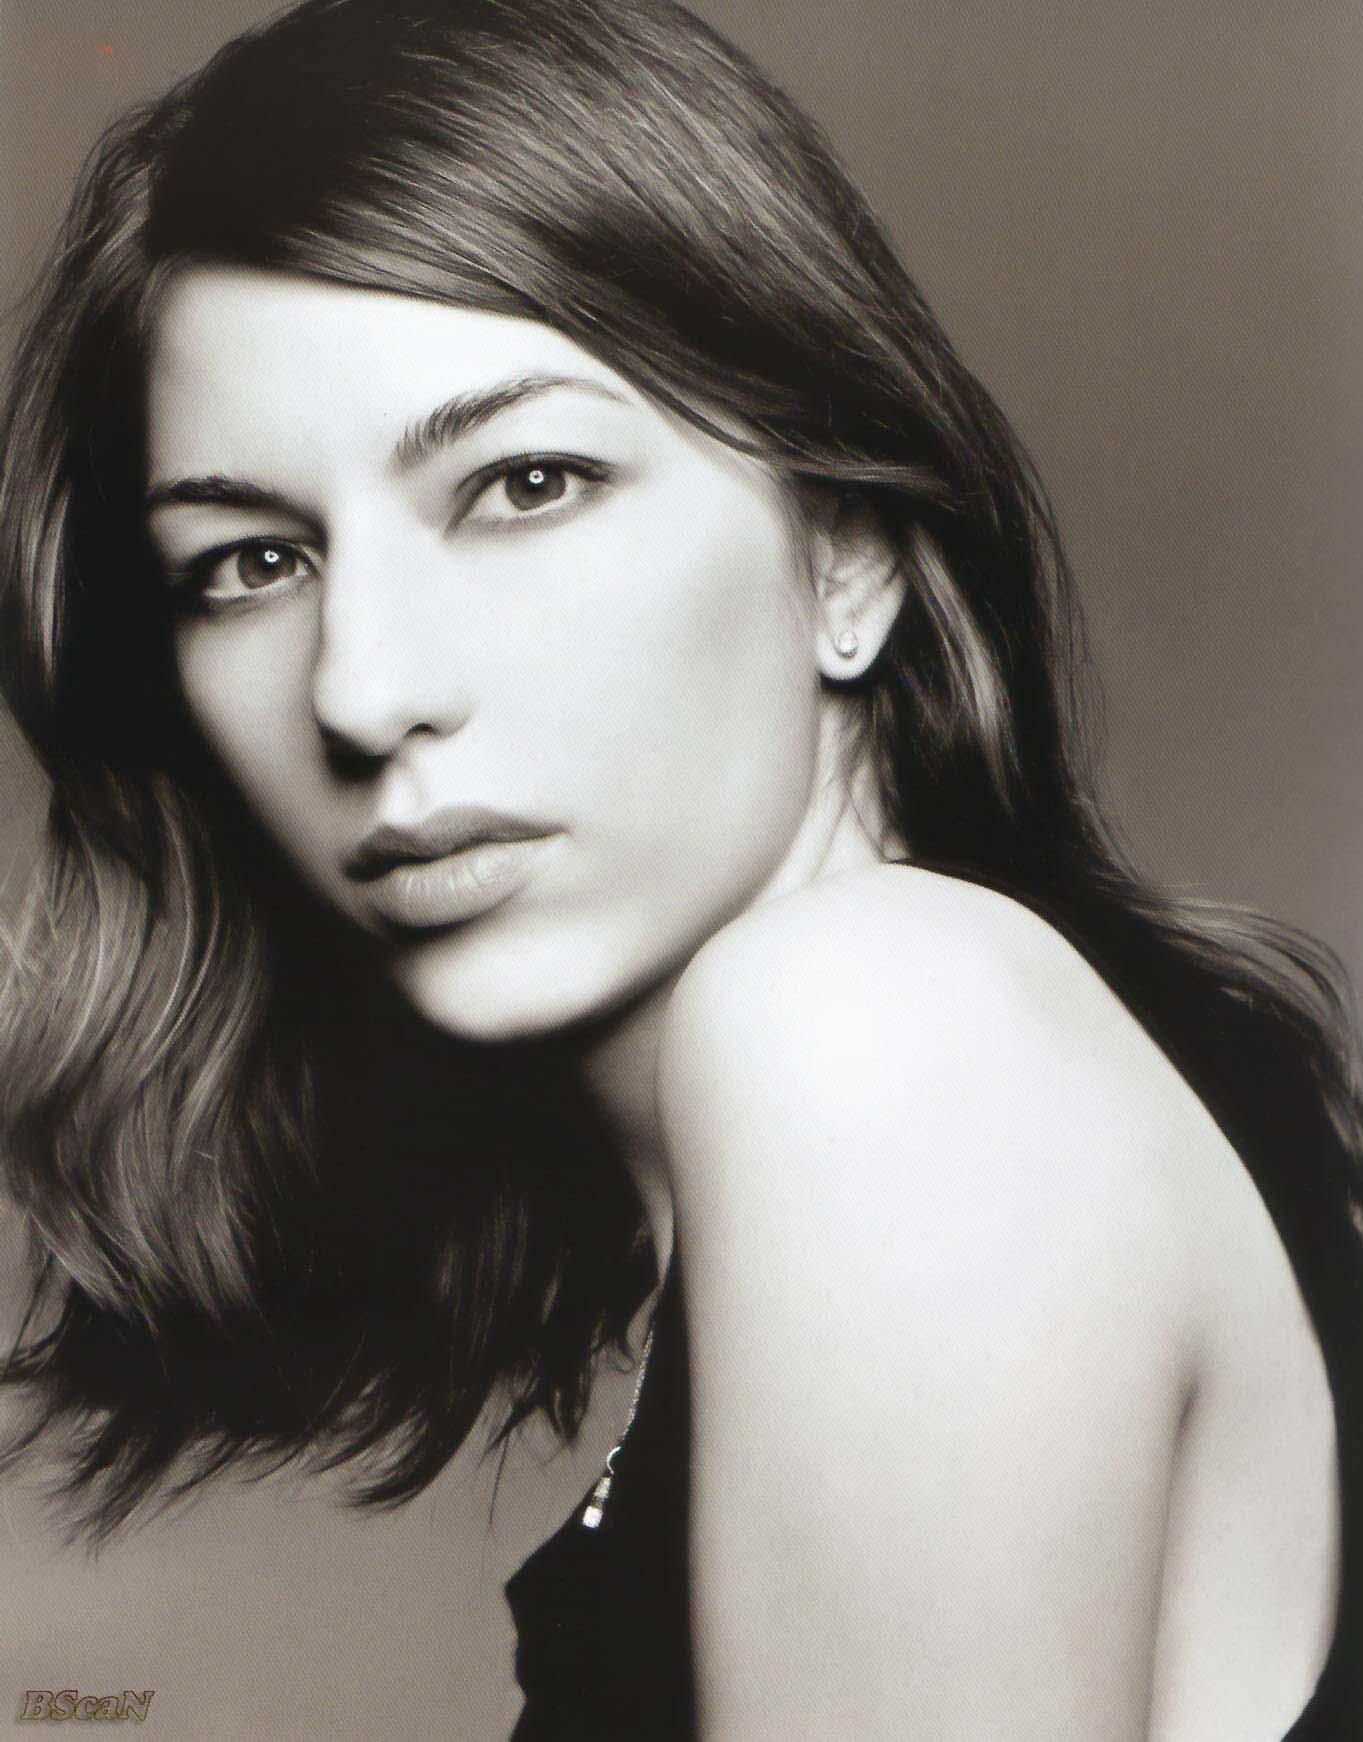 Sofia Coppola - utalentowana, skromna i autentyczna